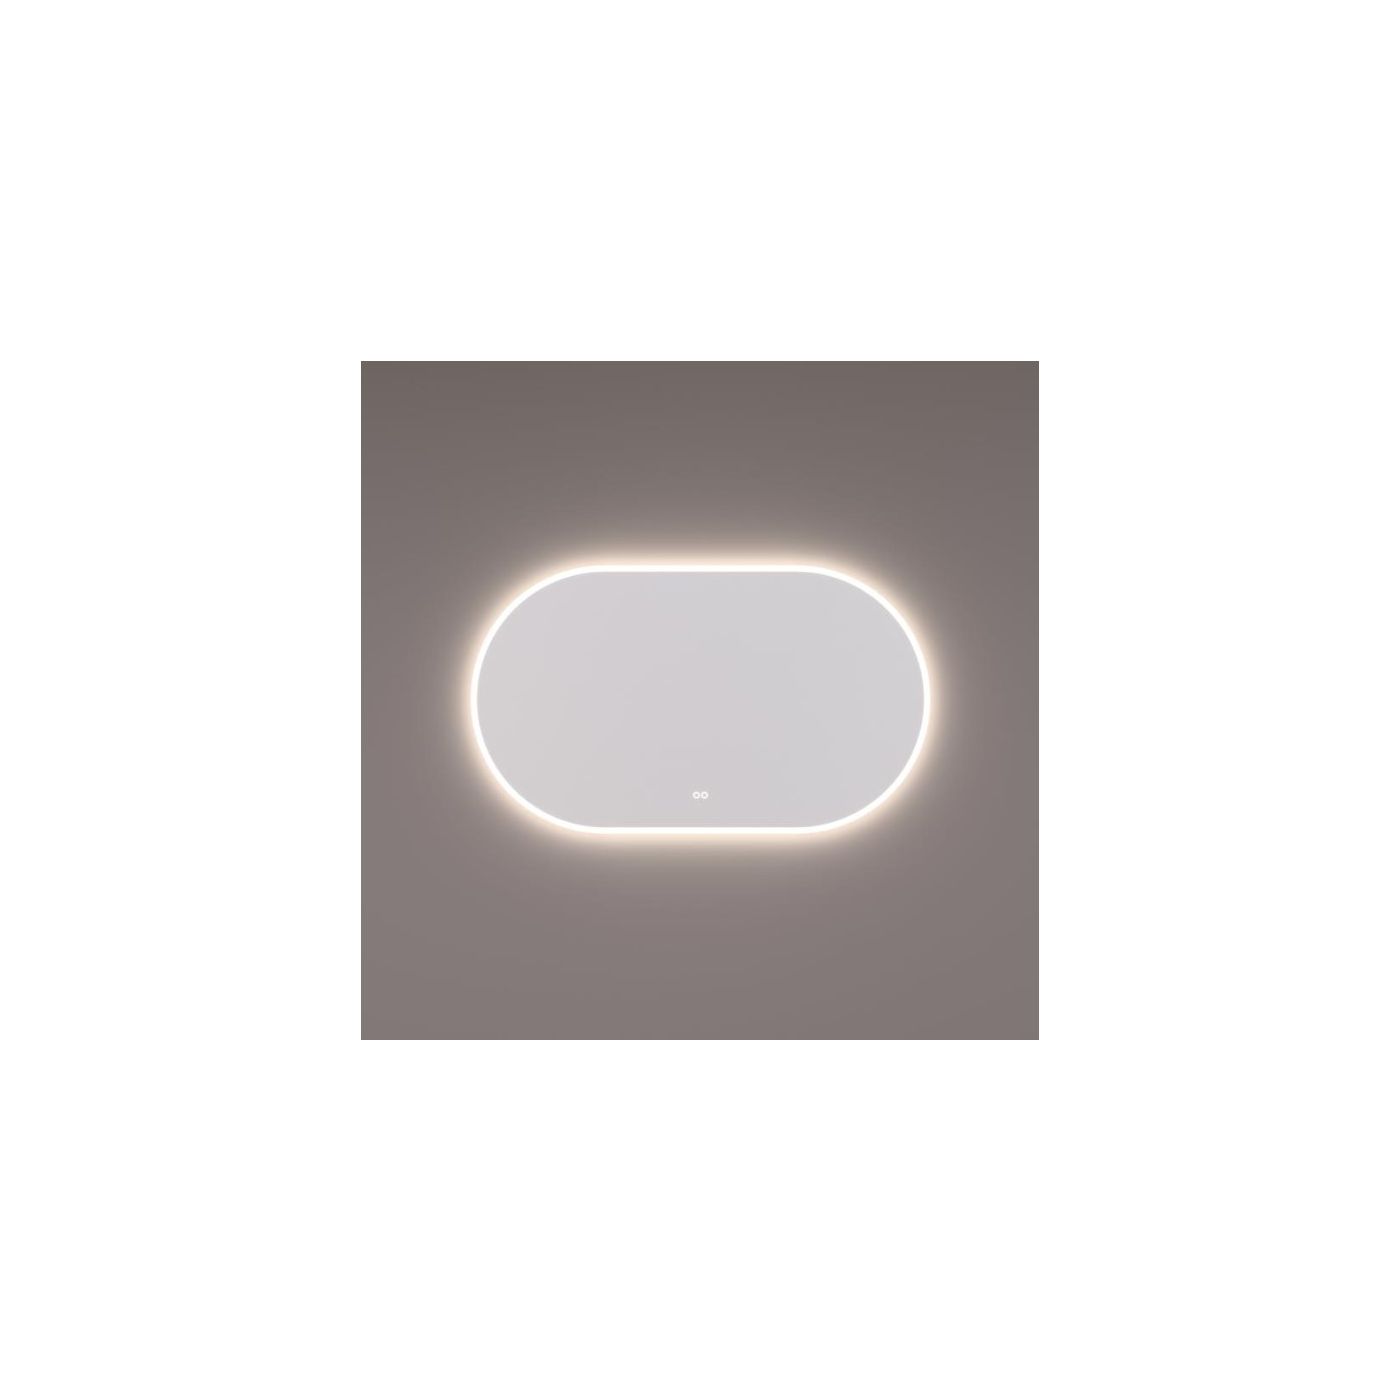 Hipp-Design spiegel ovaal-recht met LED verlichting 120x70